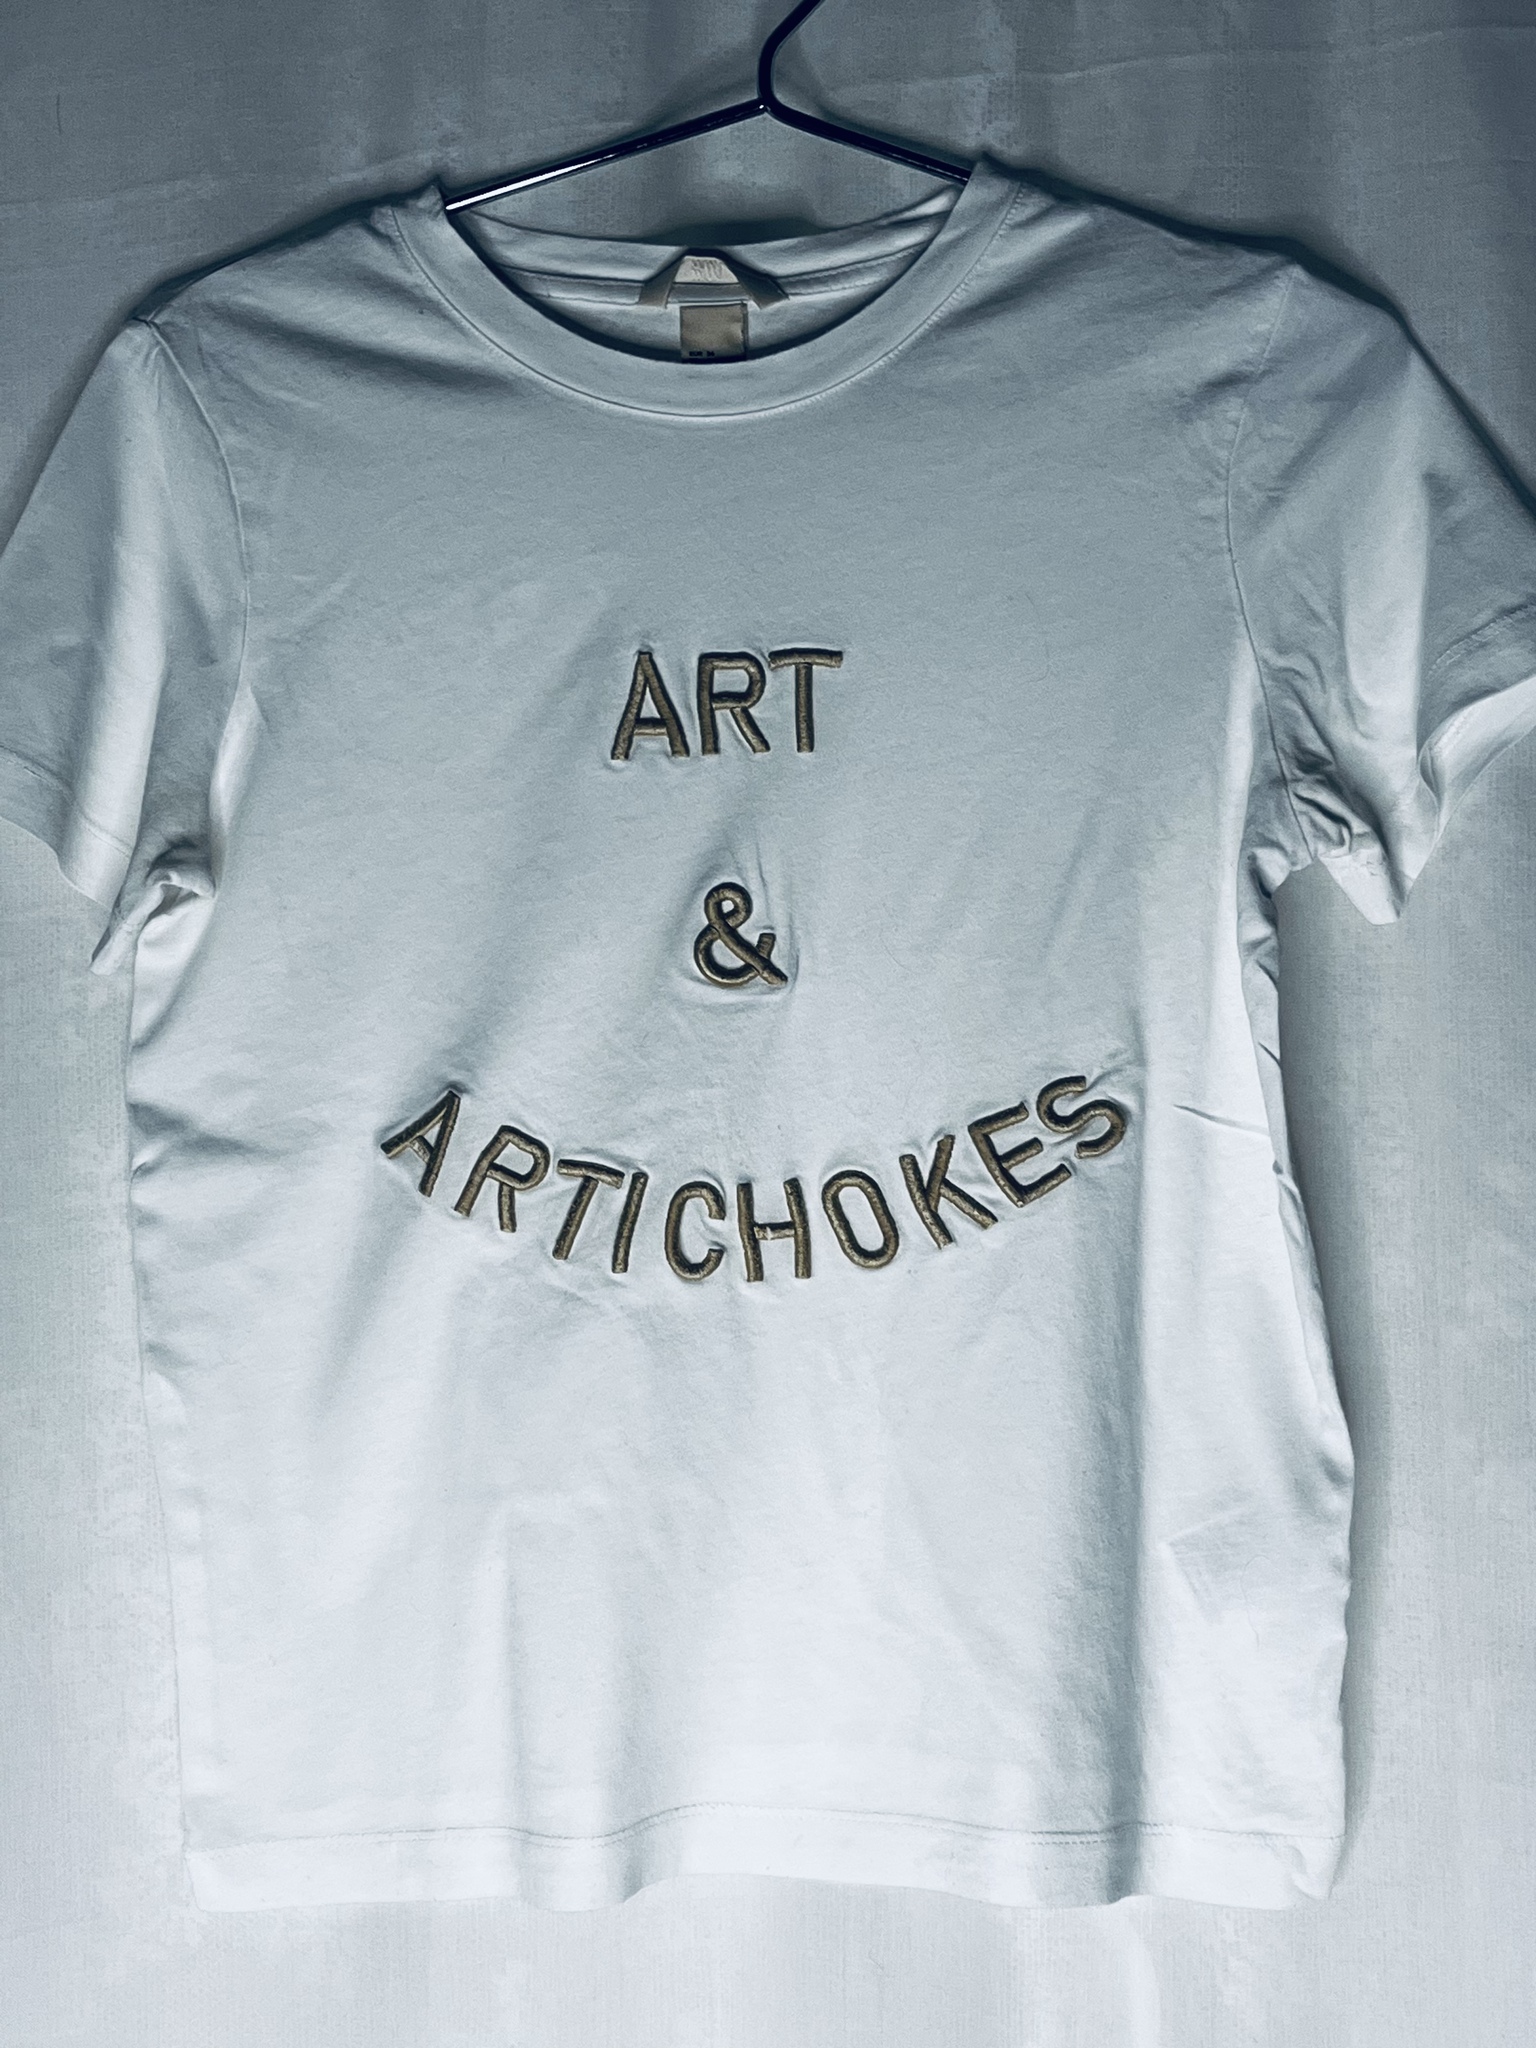 Tisha "Art & Artichoke"